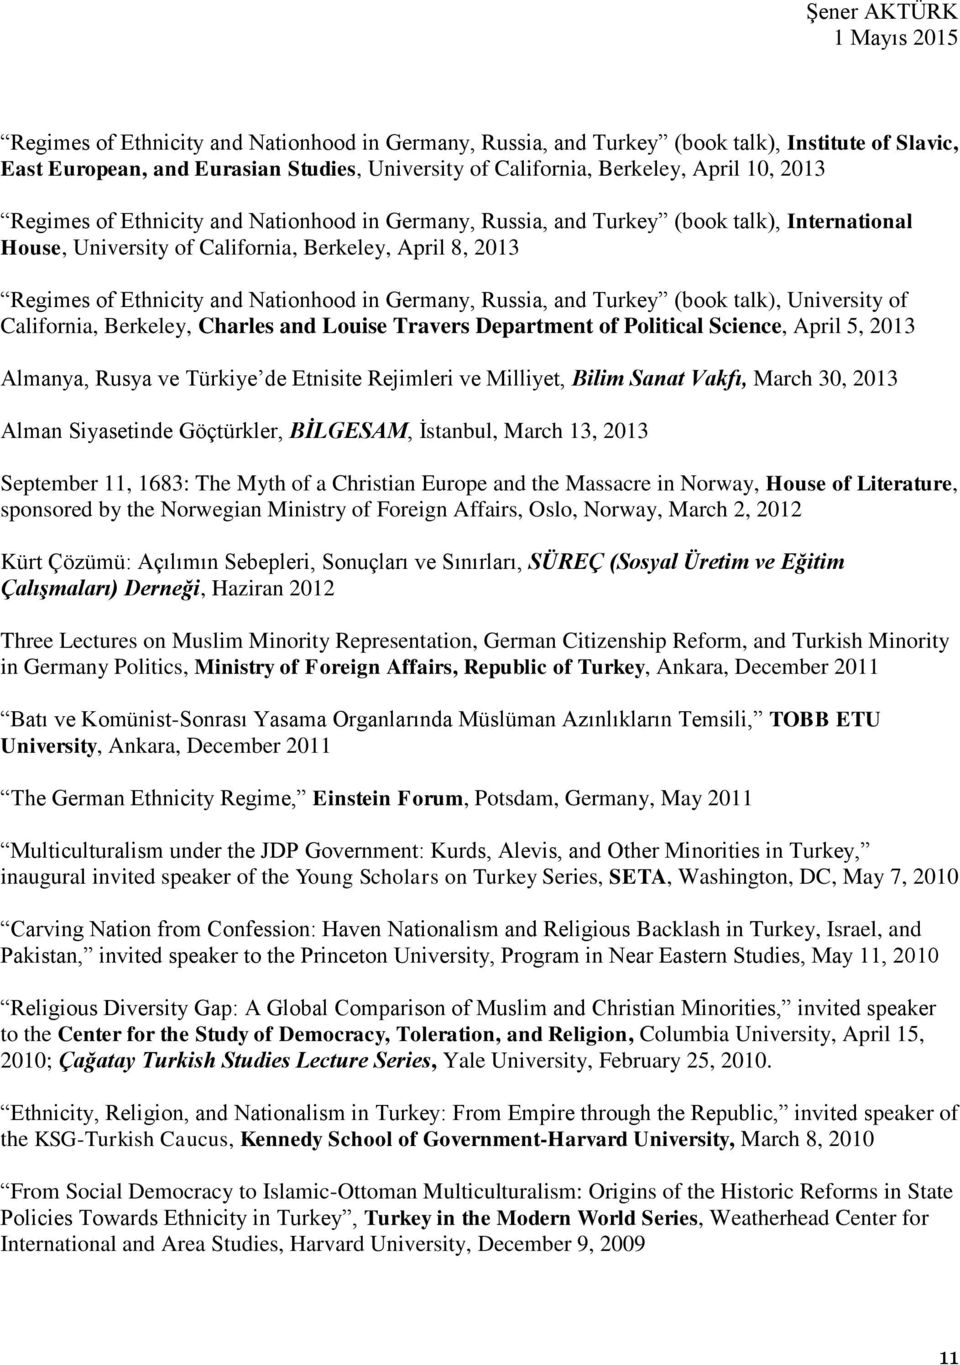 Turkey (book talk), University of California, Berkeley, Charles and Louise Travers Department of Political Science, April 5, 2013 Almanya, Rusya ve Türkiye de Etnisite Rejimleri ve Milliyet, Bilim